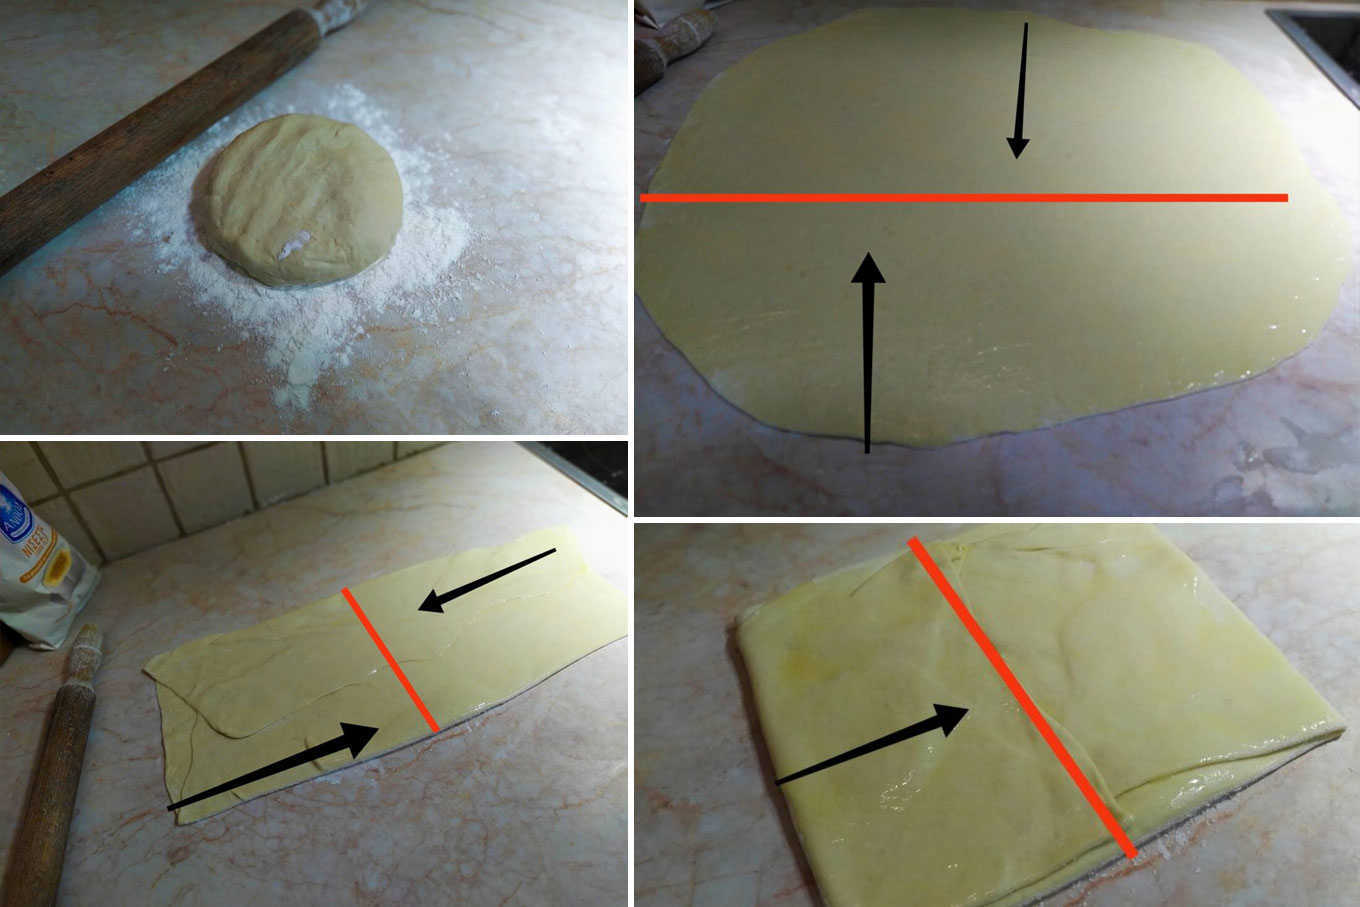 Δυσκολεύεσαι να φτιάξεις φύλλο για πίτα τραγανό; Εδώ θα δεις βήμα βήμα τις οδηγίες για να γίνεις εξπέρ ακόμα και αν είσαι αρχάριος